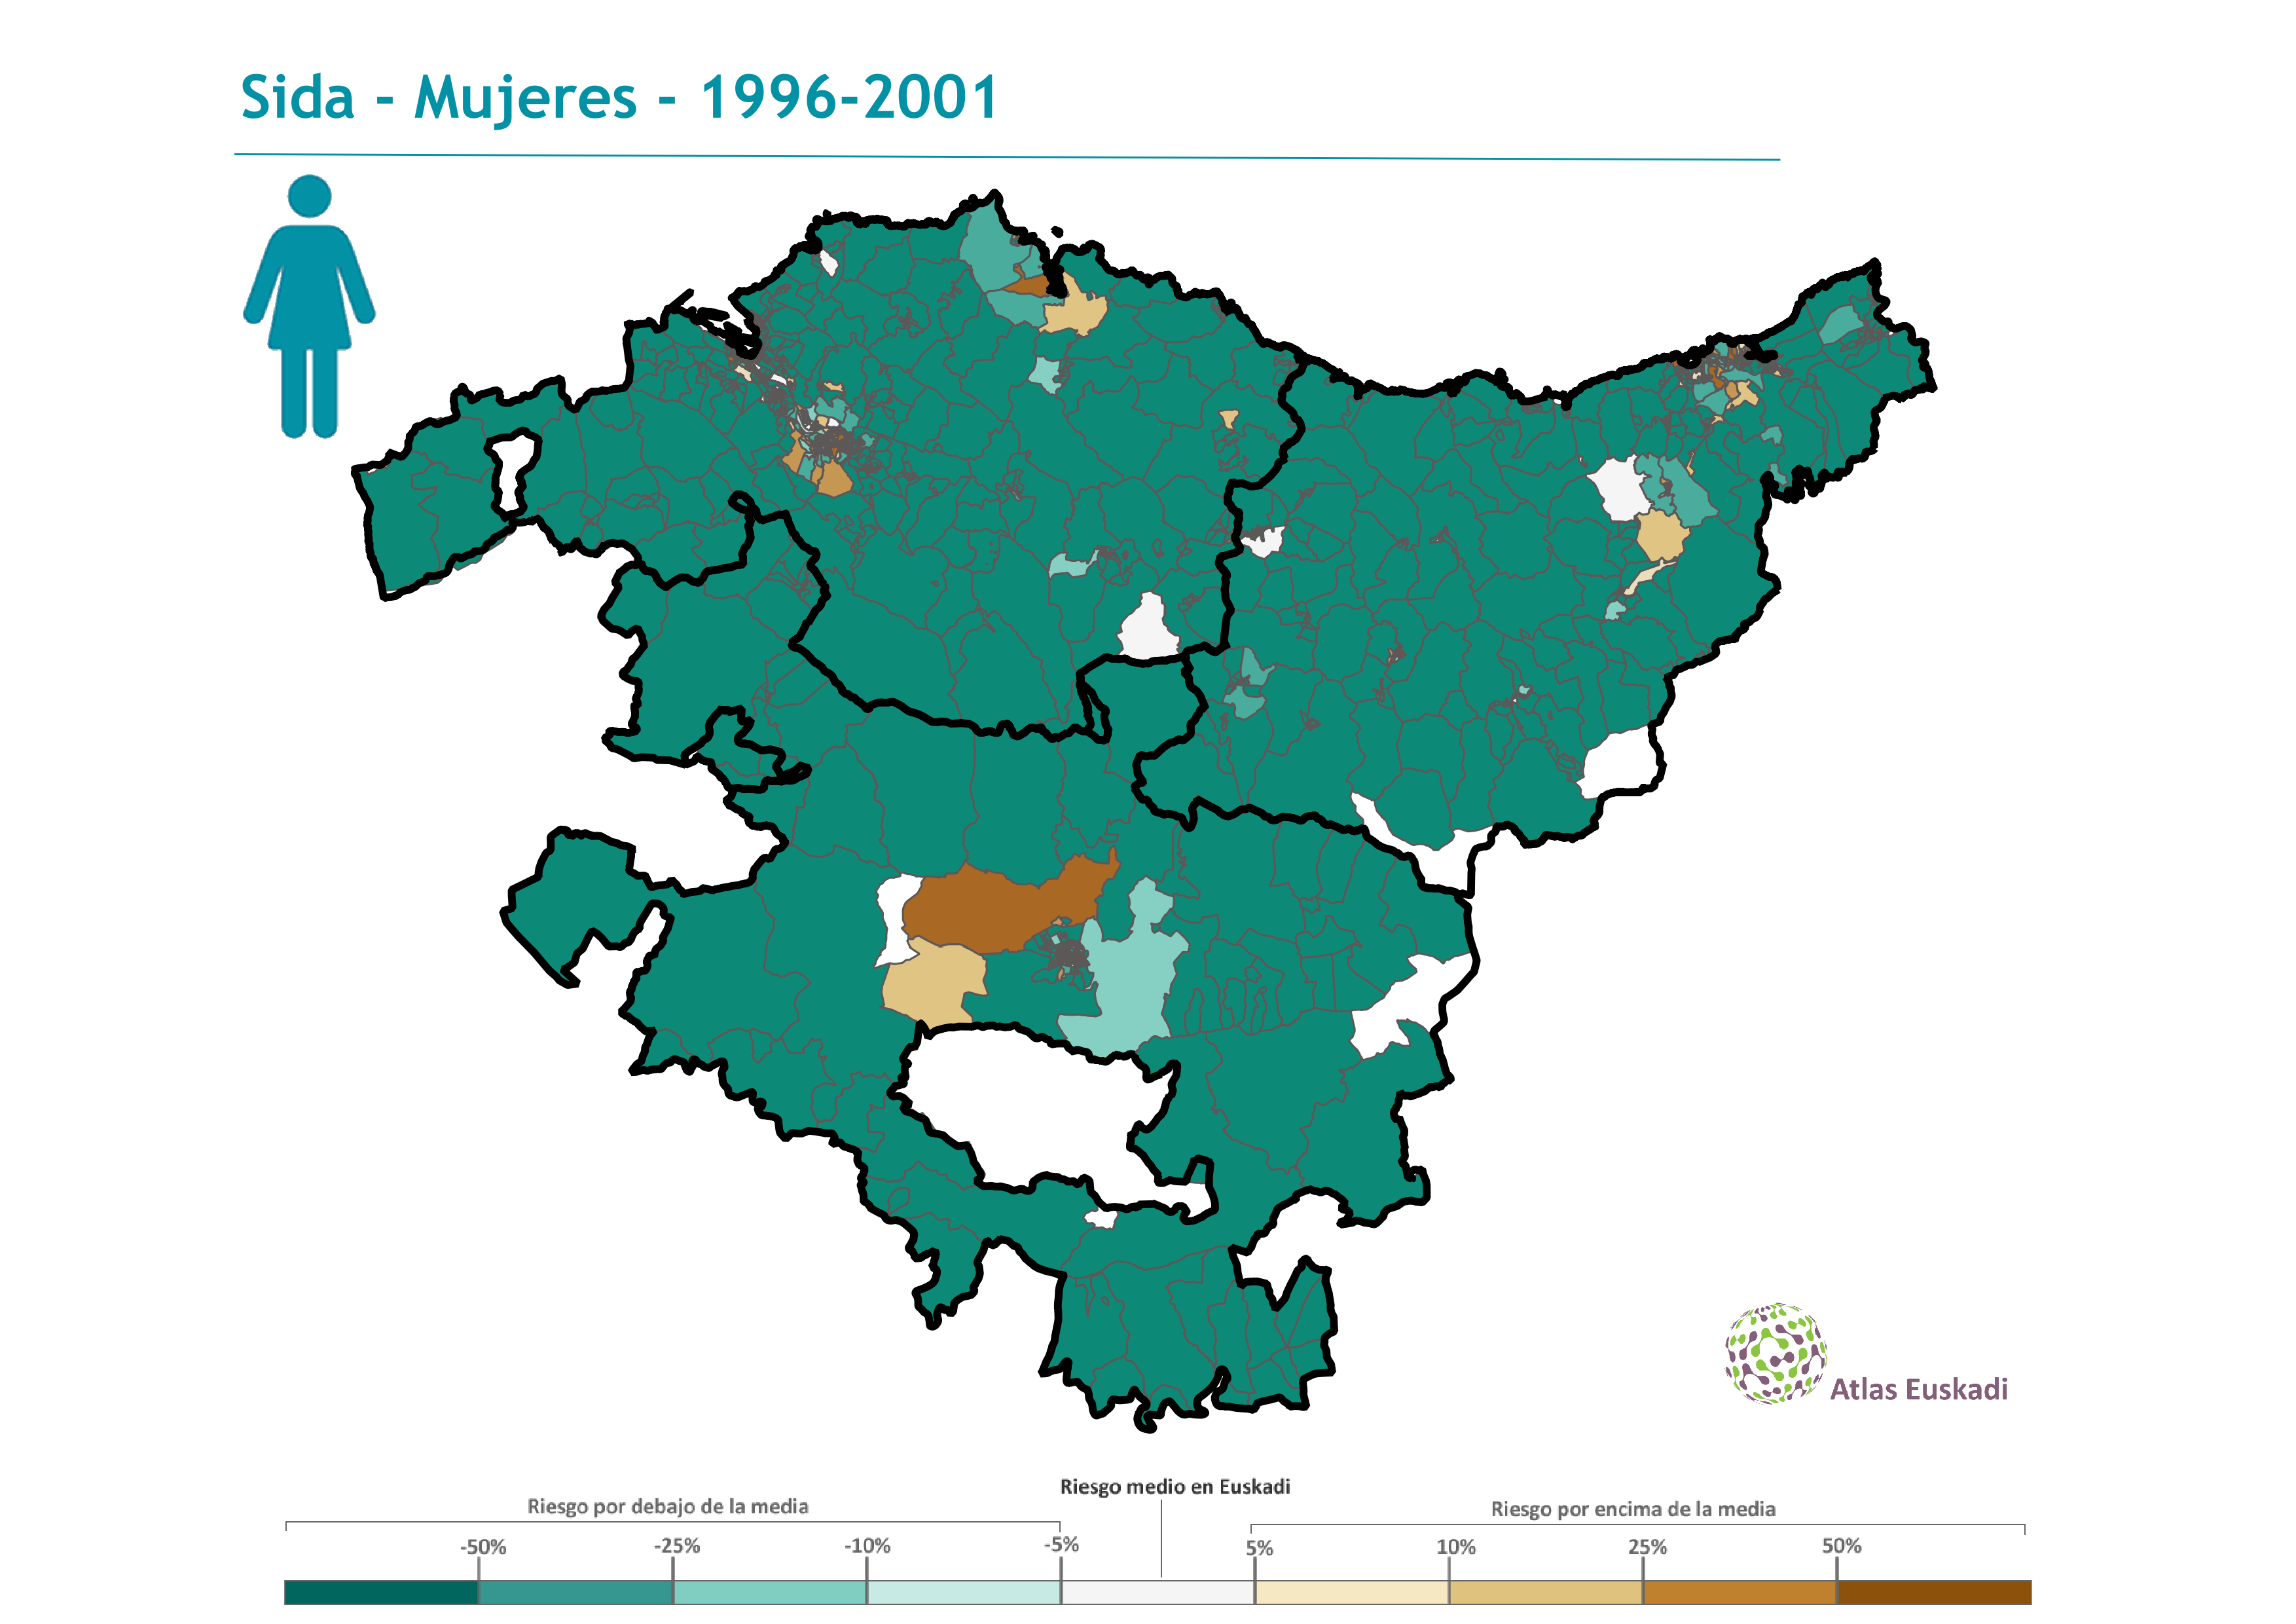 Sida mujeres  1996-2001 Euskadi